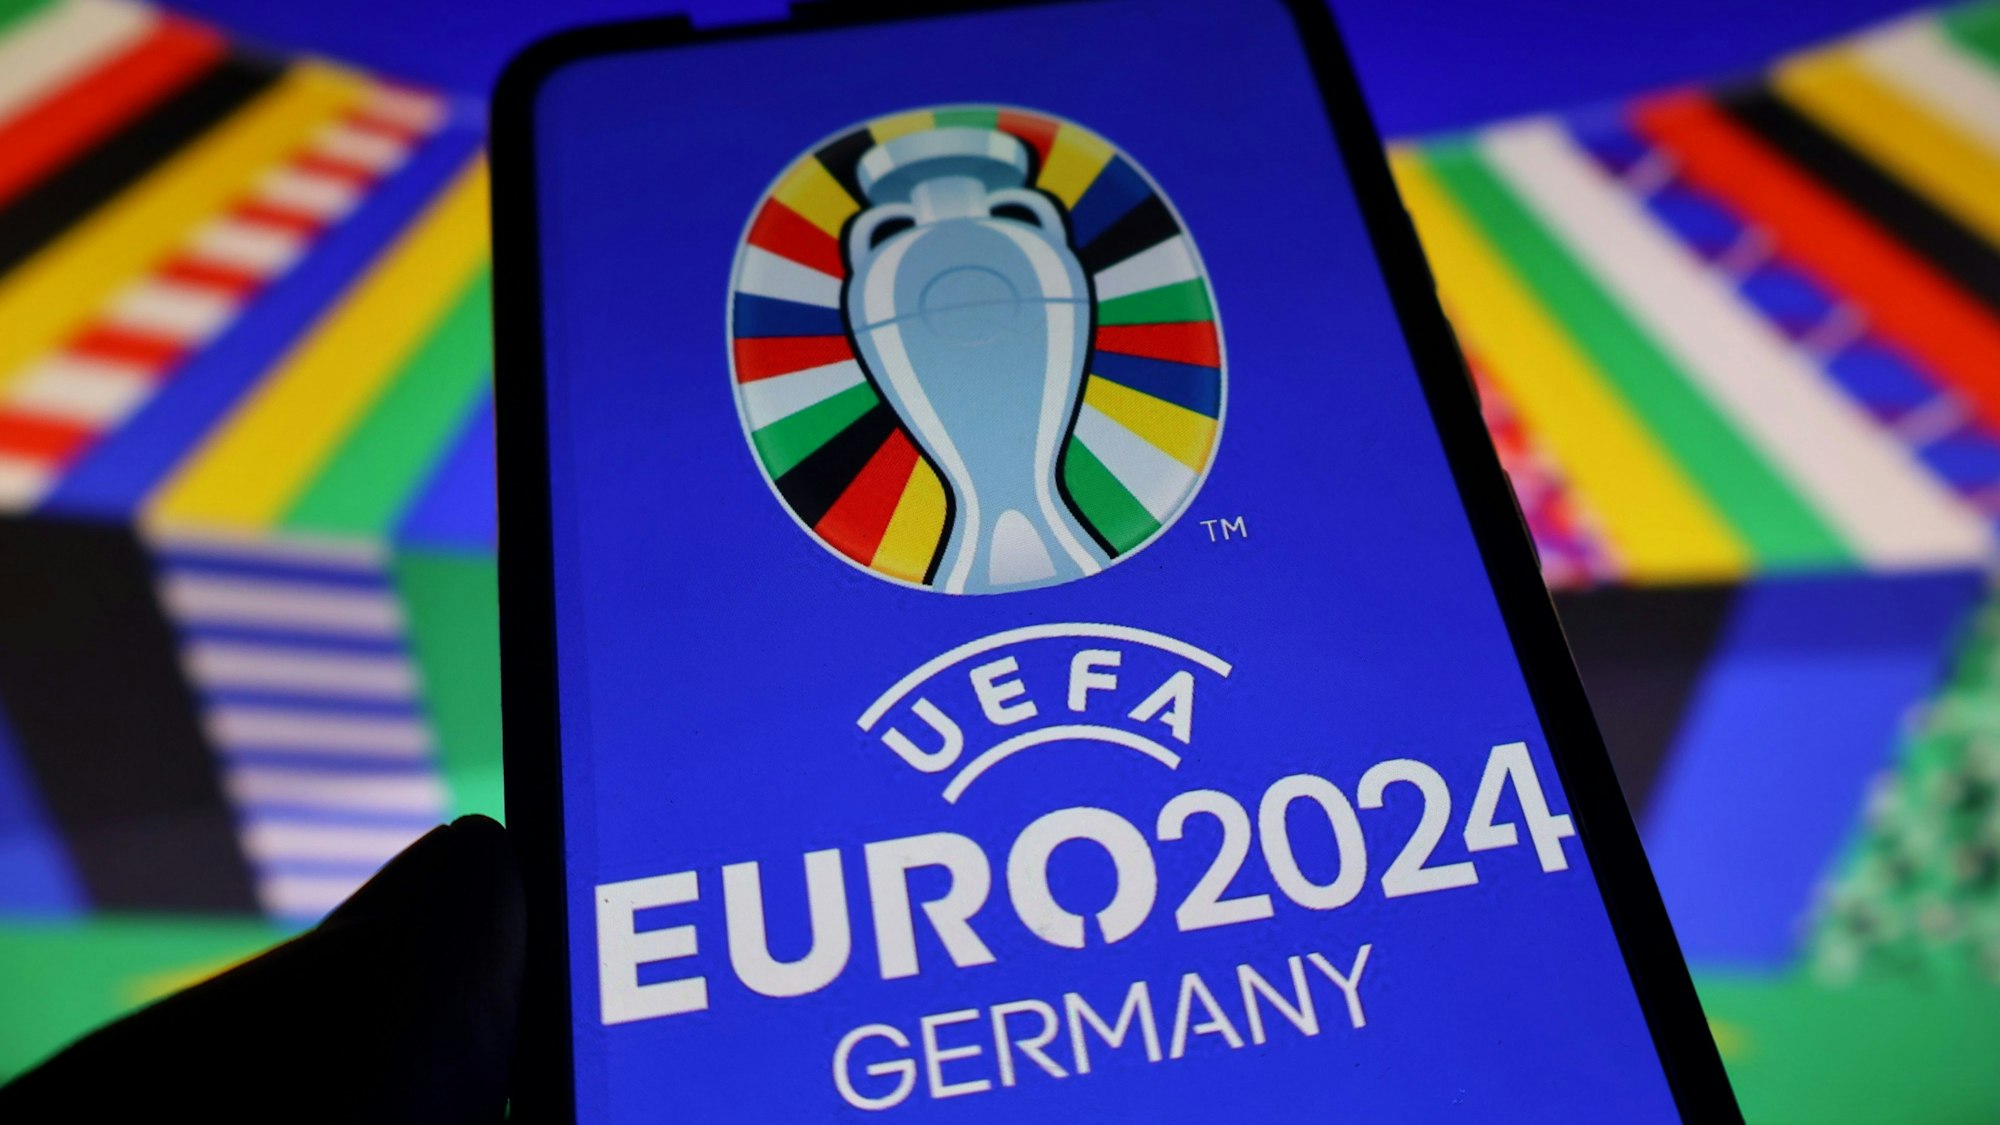 Das Logo der UEFA Euro 2024 ist auf einem Smartphone zu sehen.